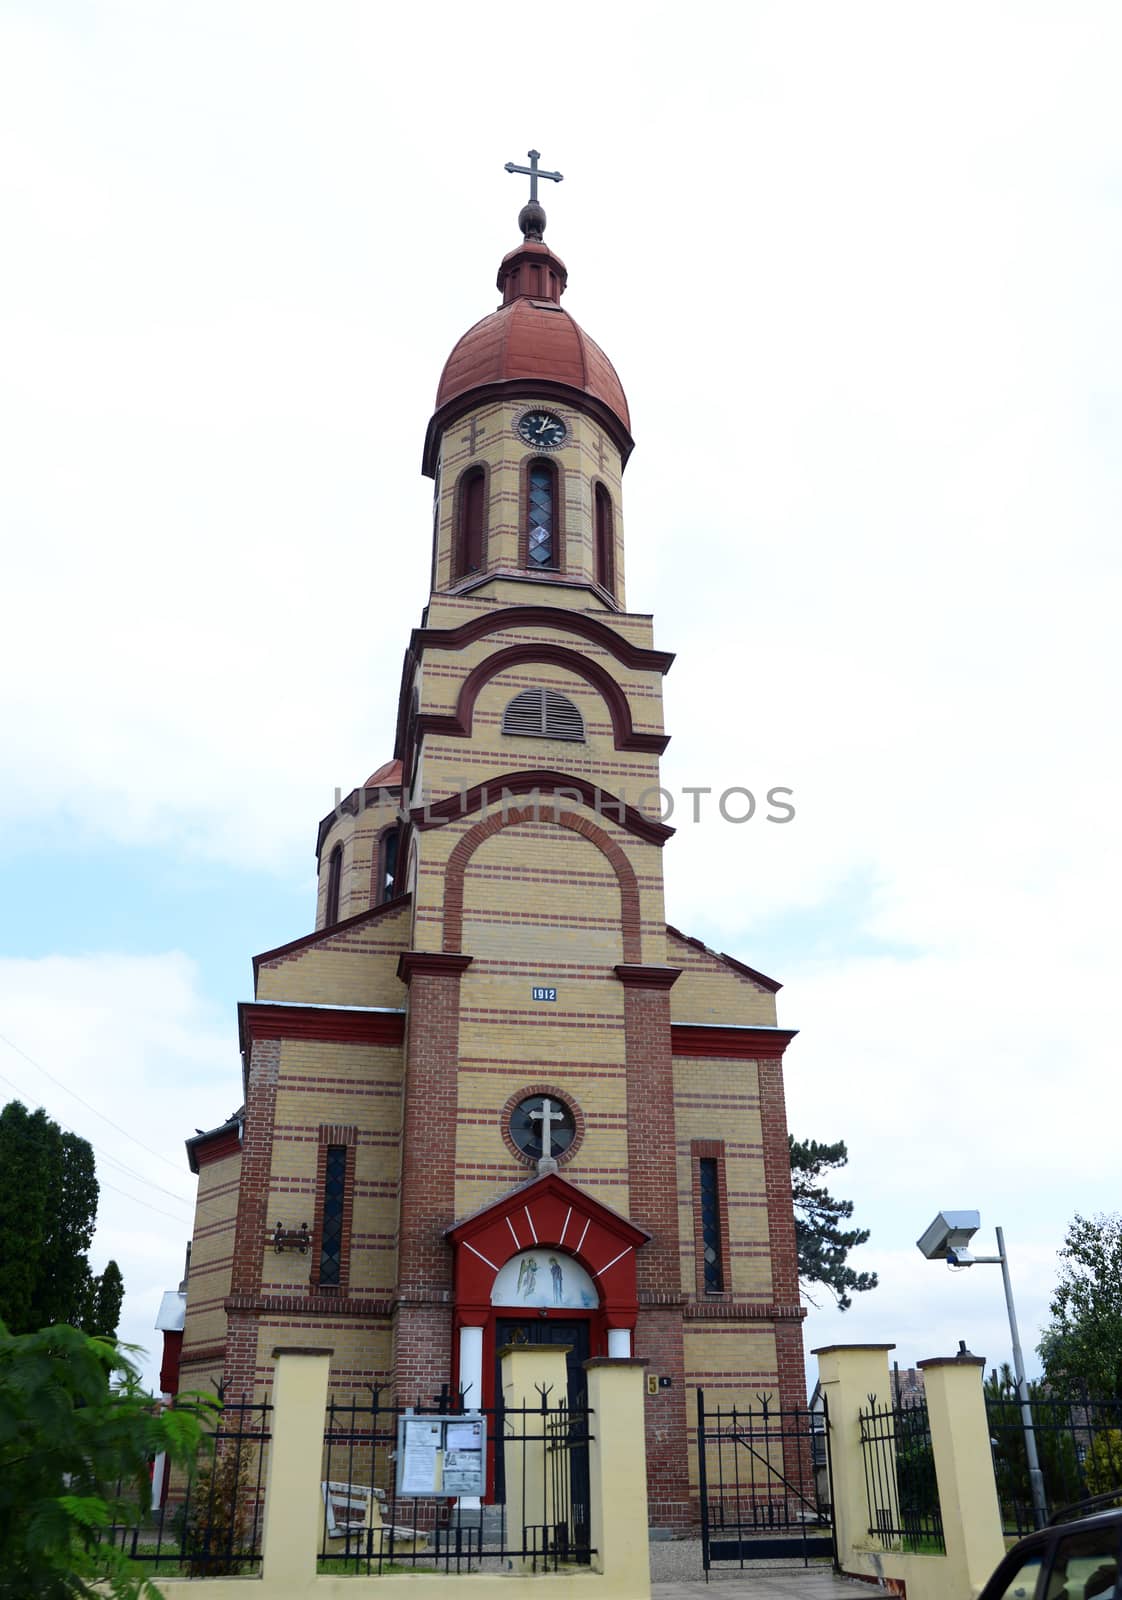 Crvena Crkva church by tony4urban